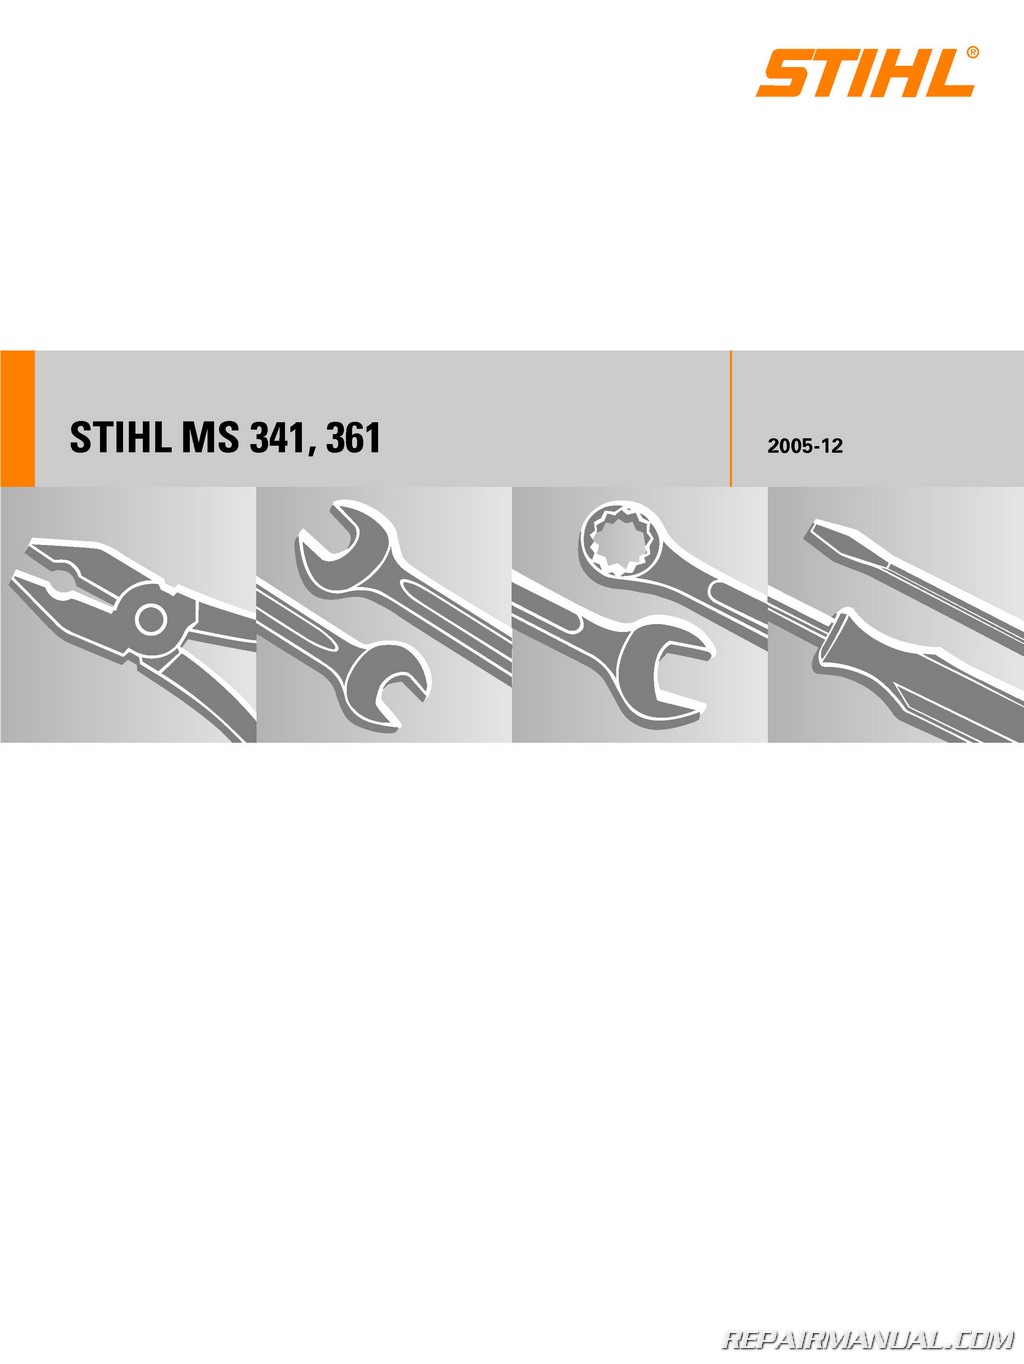 Stihl MS341,361,362,MS440,MS460,044,046. Brake handle Screw and Bushing Set 